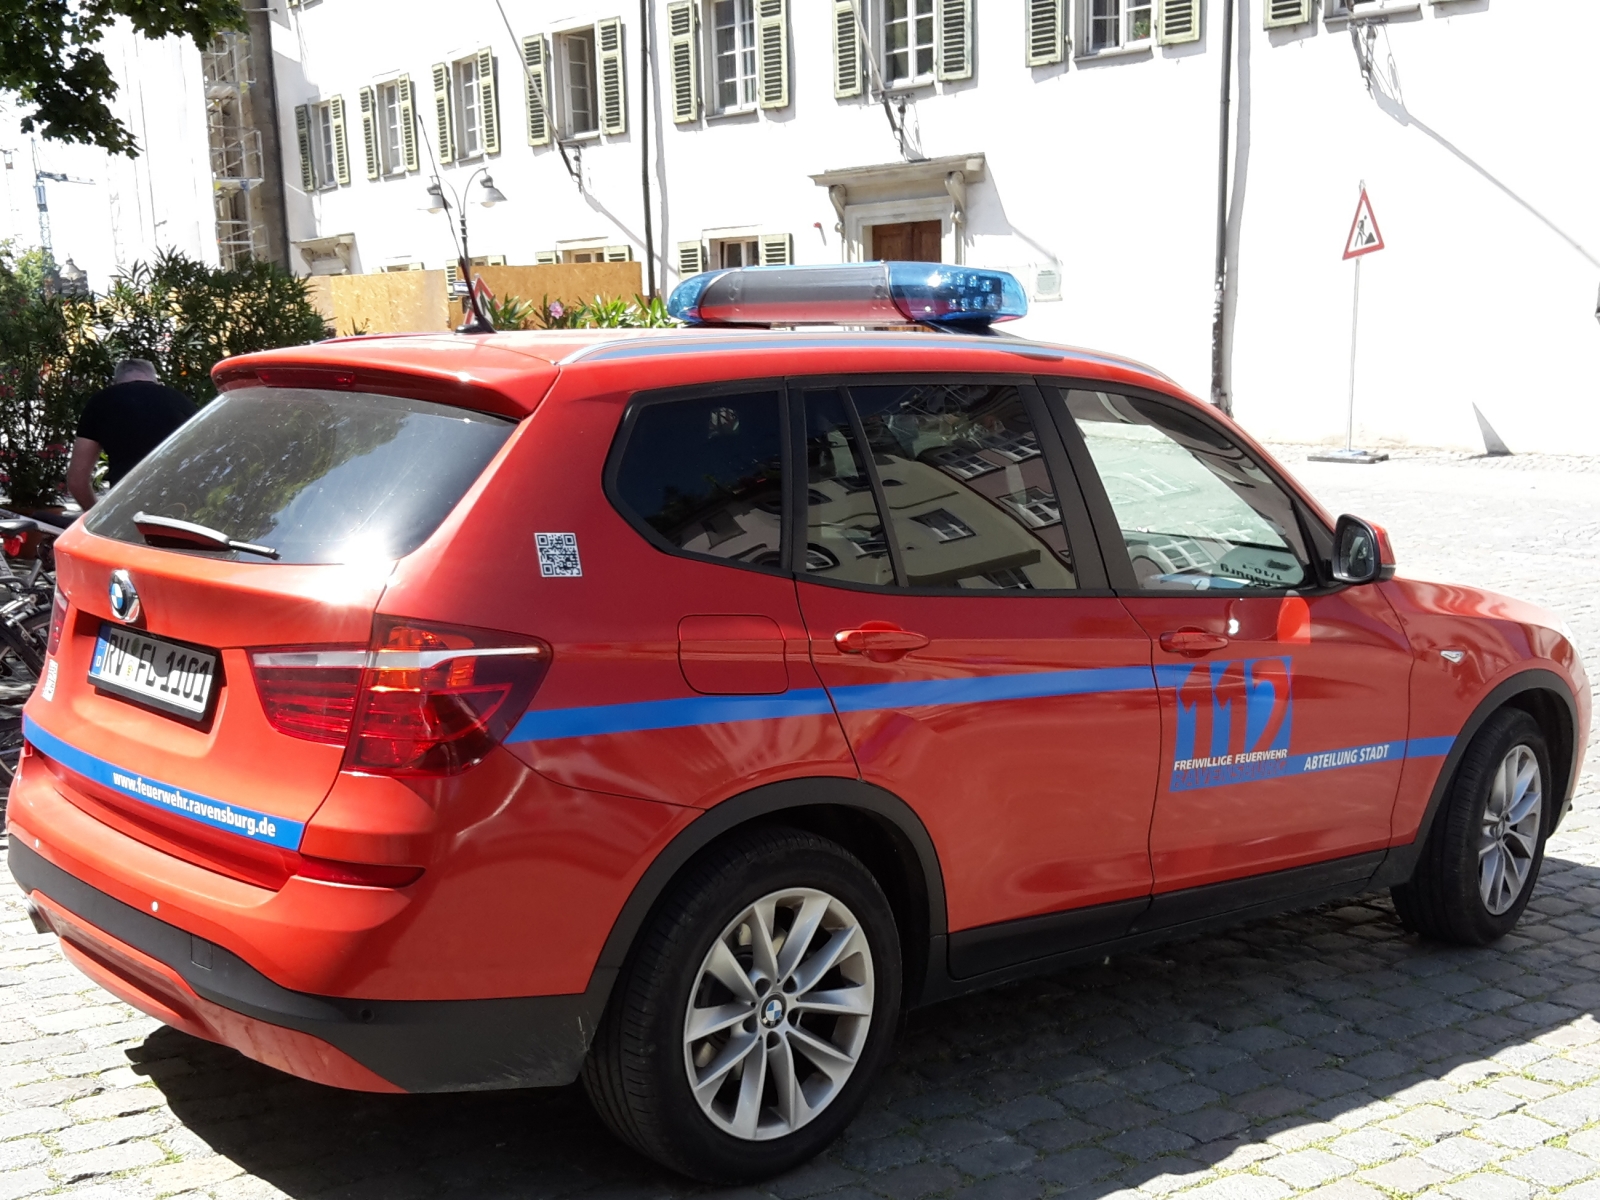 BMW X3 Feuerwehr